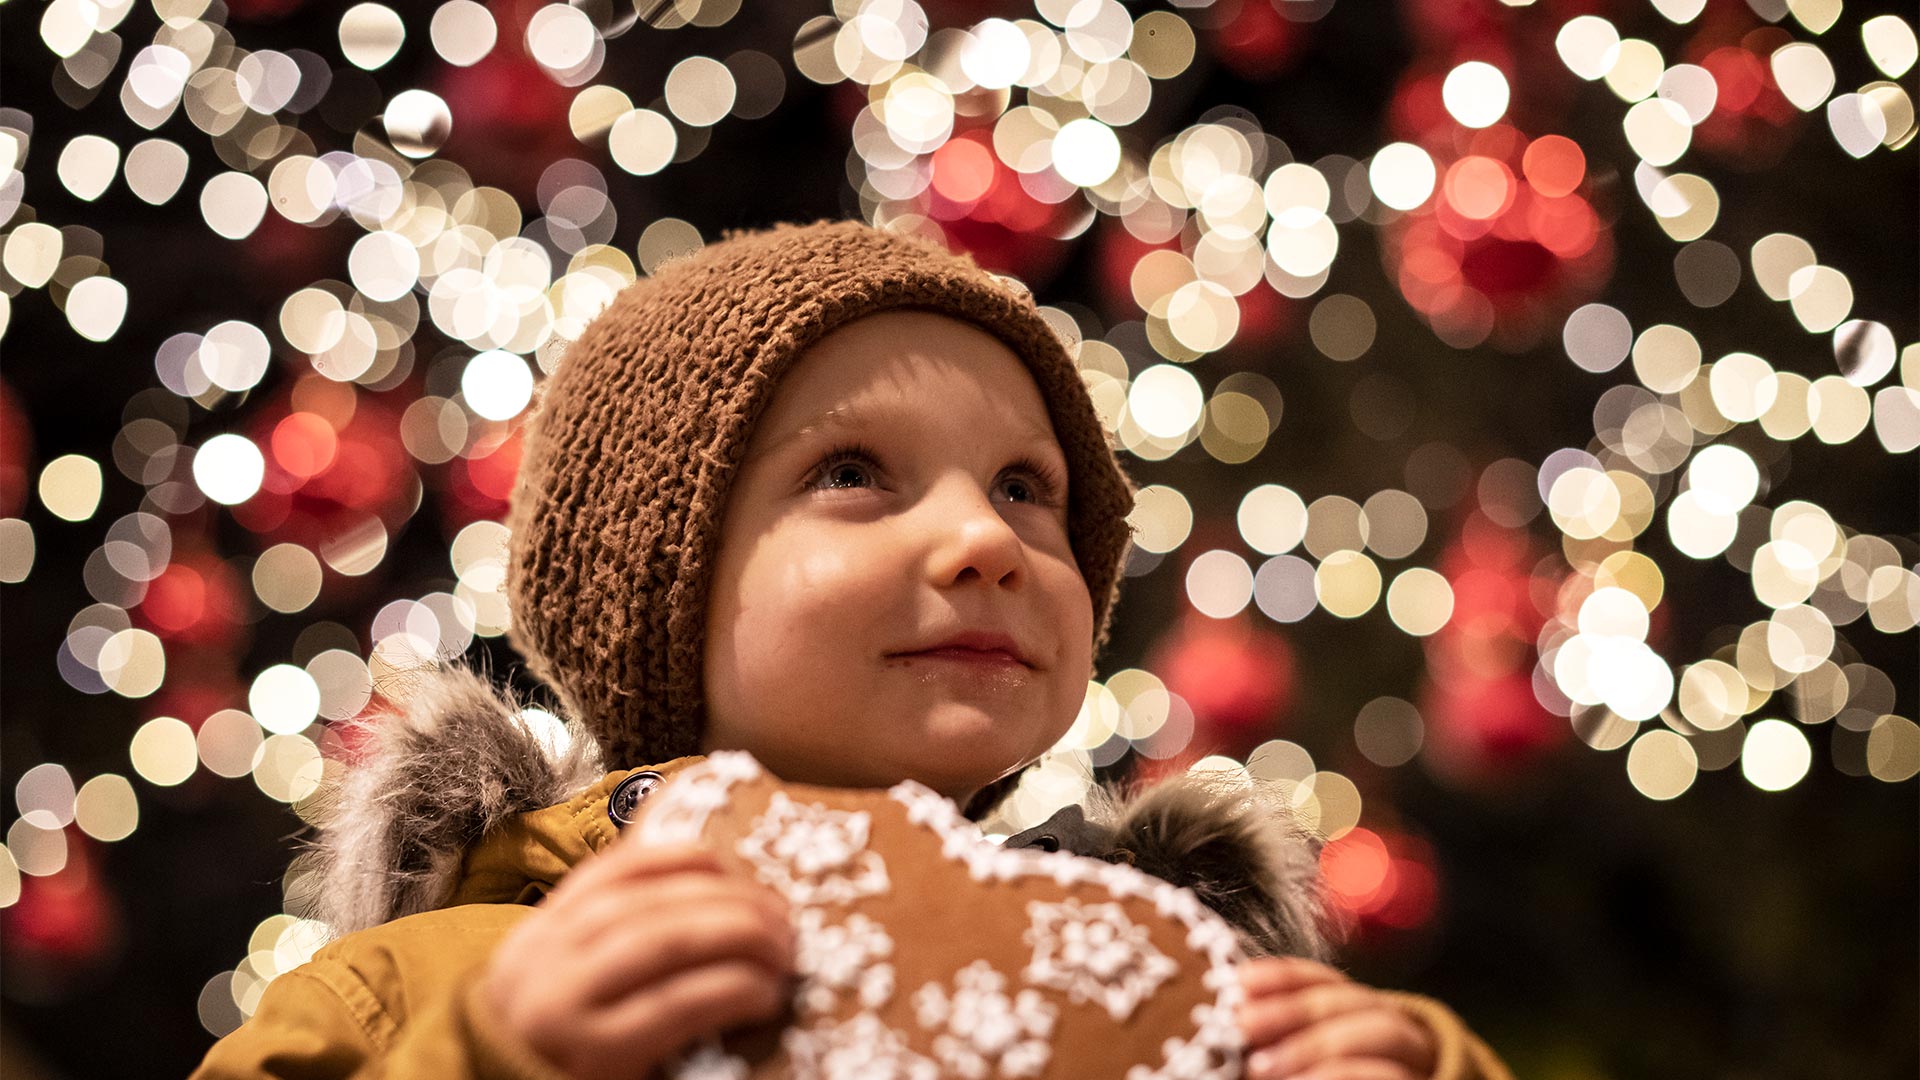 Vor einem Lichterhintergrund isst im Vordergrund ein Kind in weihnachtlicher Atmosphäre ein Bonbon.